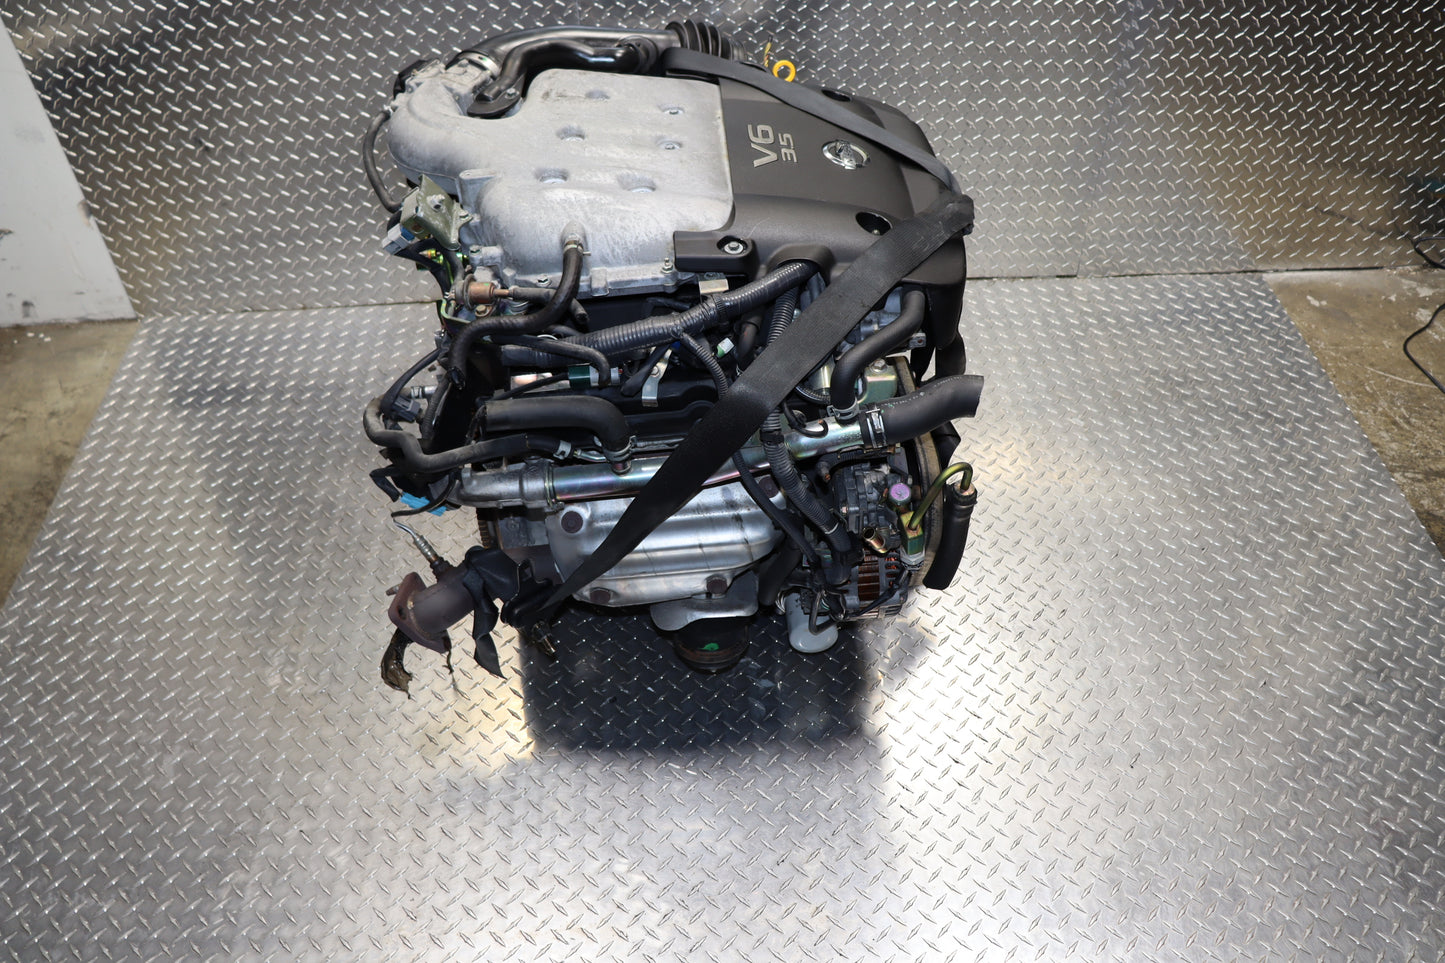 JDM VQ35DE 03-04 Nissan 350Z Infiniti G35 ENGINE Only 03-04 V6 3.5L